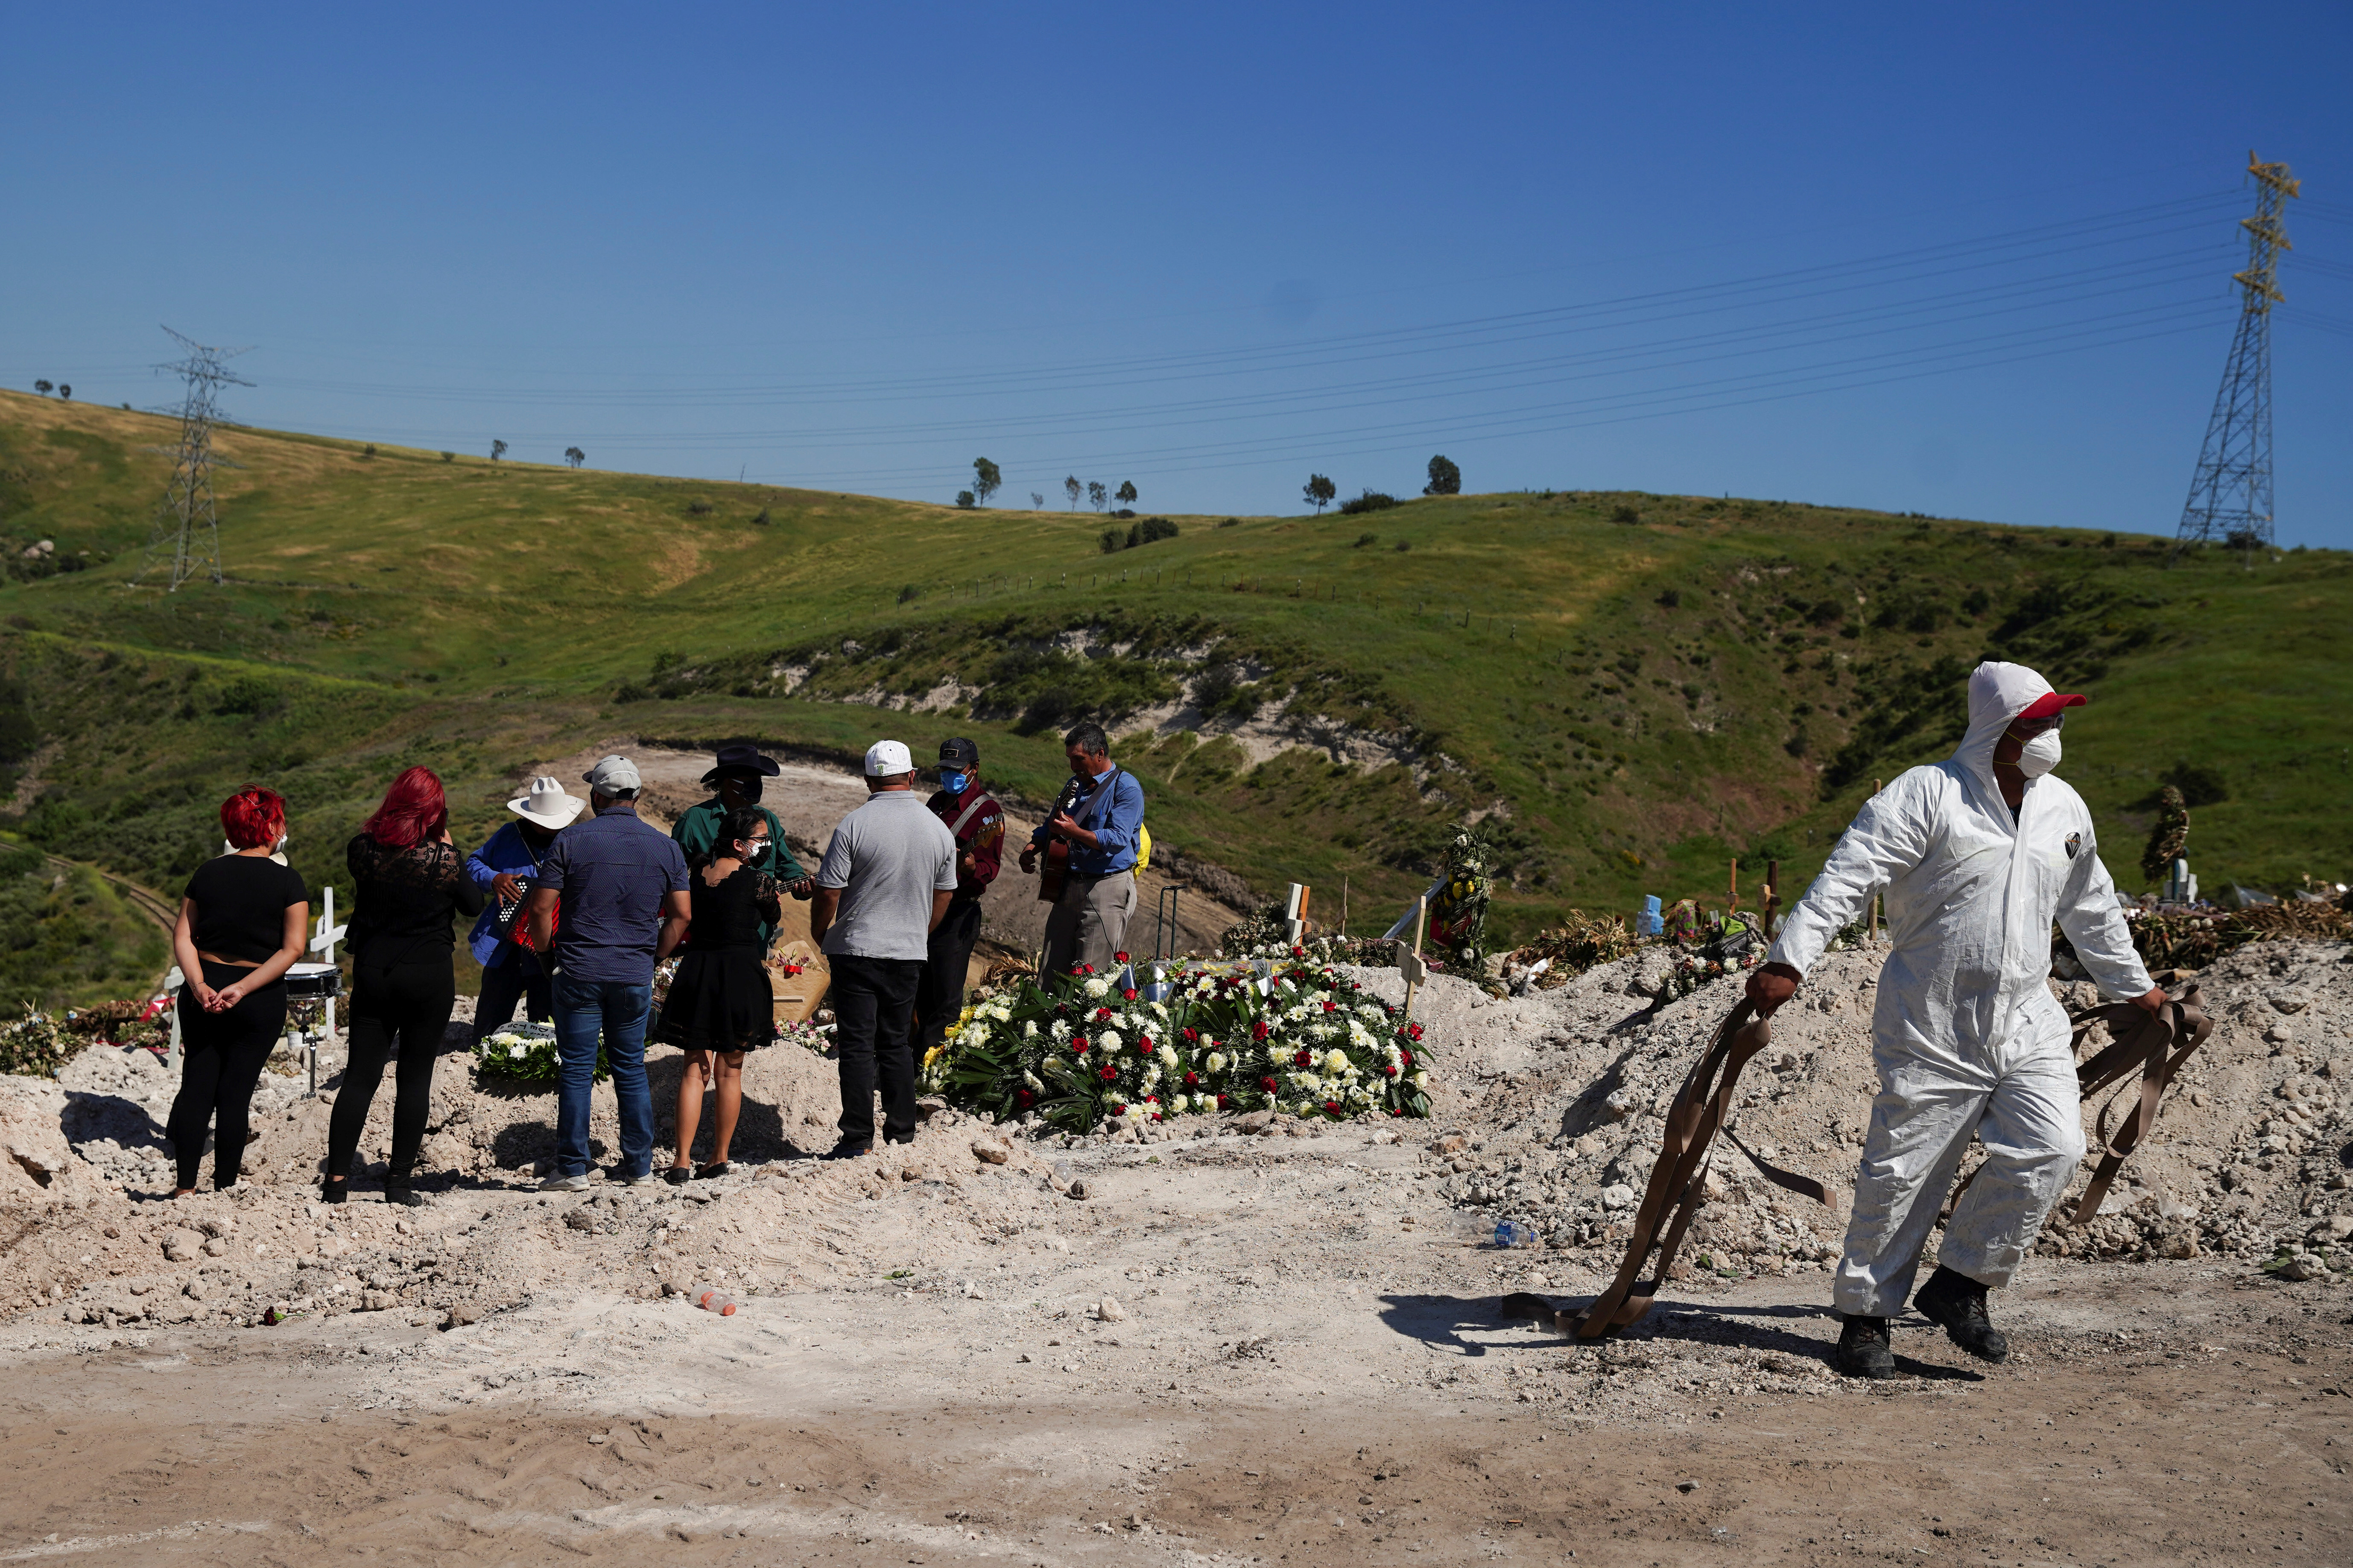 Un trabajador en traje protector camina con las correas usadas para bajar el ataúd a la tumba para el entierro de Jesús Osorio Flores, quien murió de coronavirus en el Cementerio Municipal de Tijuana No. 13, en Tijuana, México, el 24 de abril de 2020 (REUTERS/Ariana Drehsler)